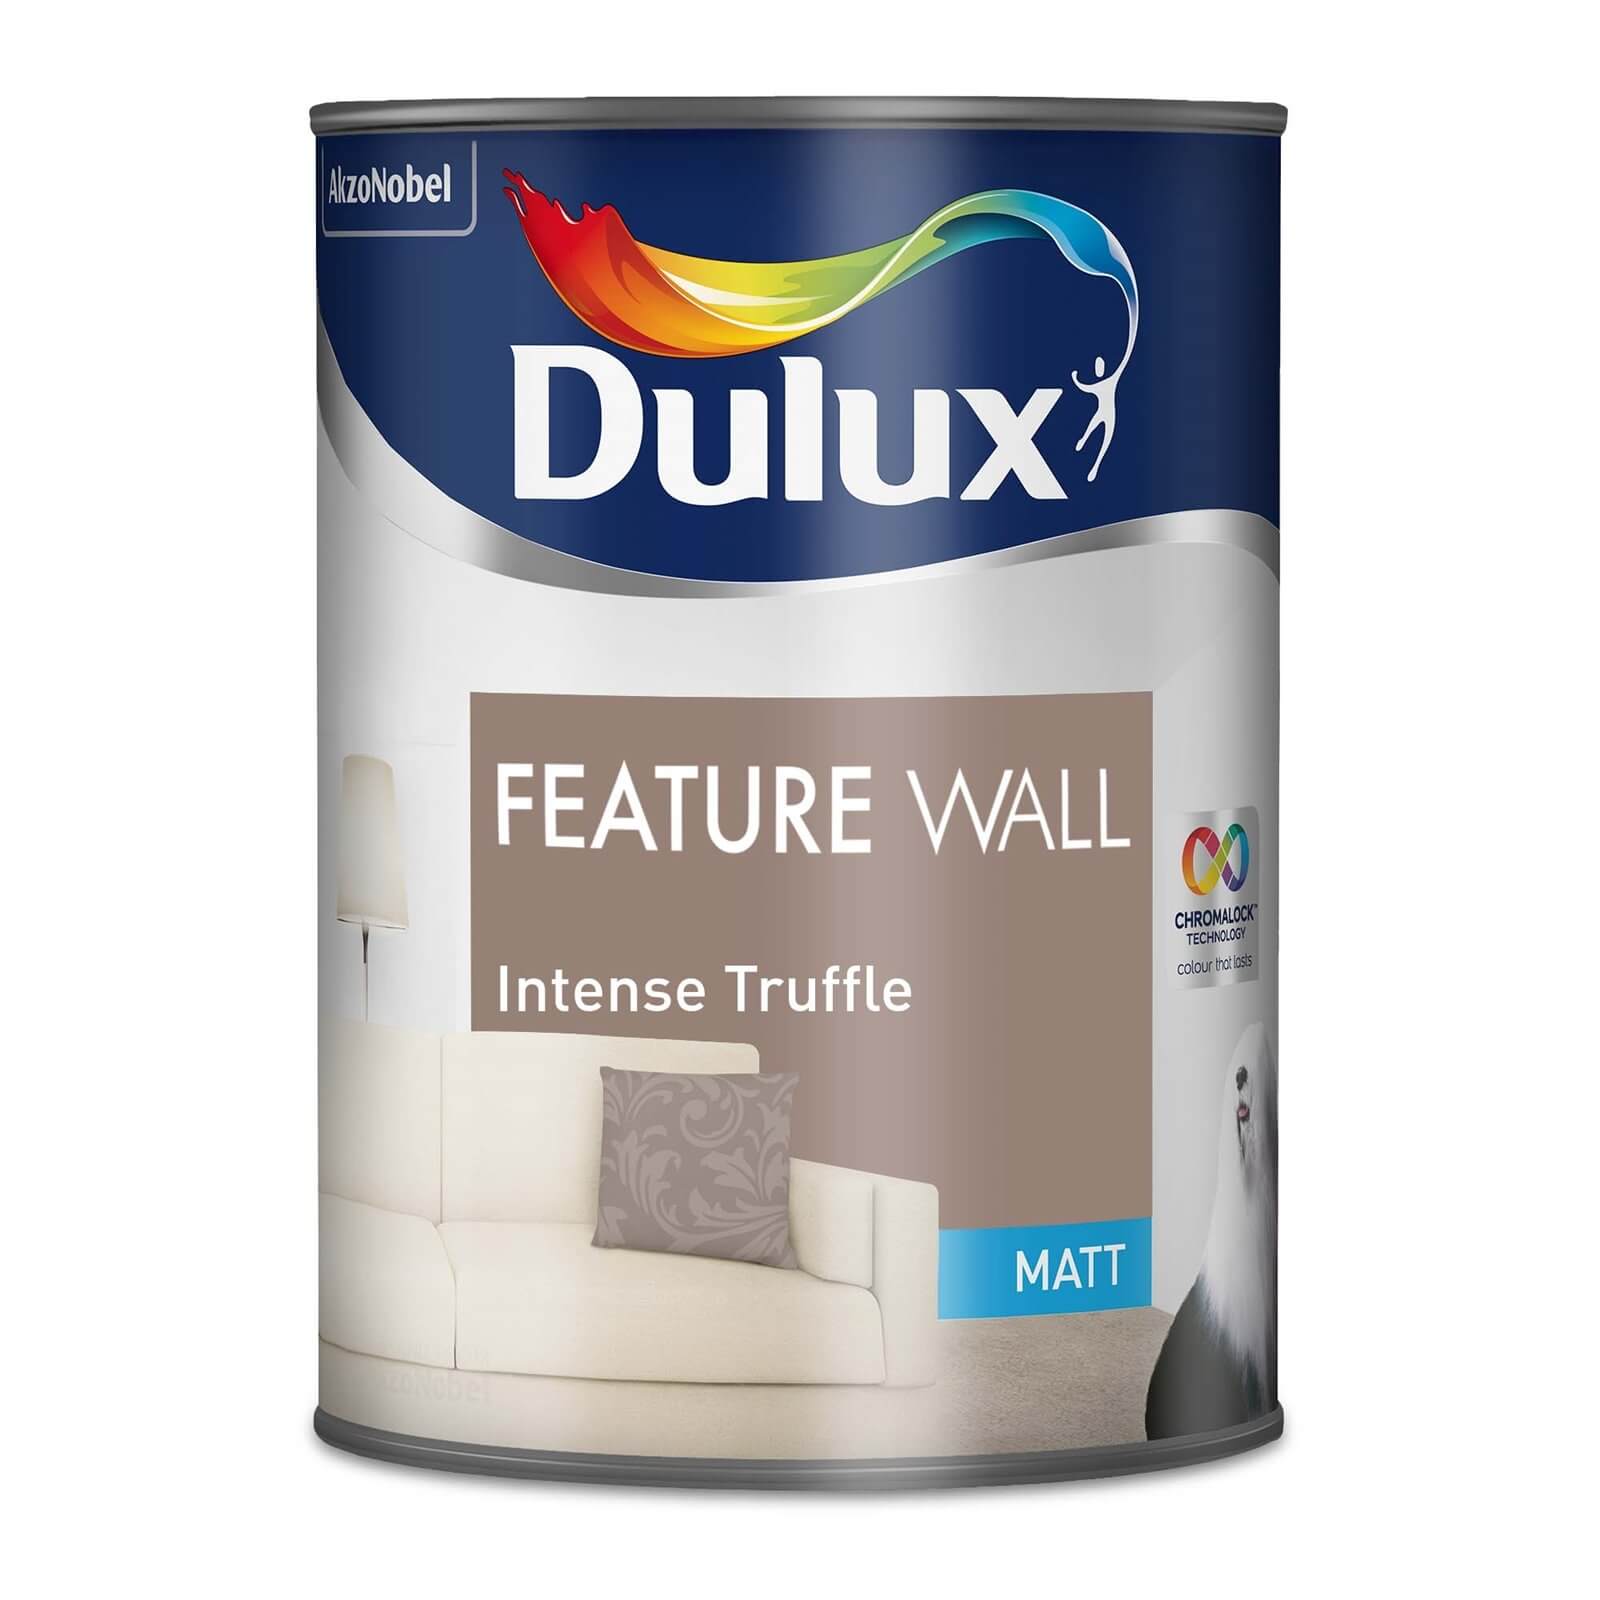 Dulux Feature Wall Intense Truffle - Matt Emulsion Paint - 1.25L